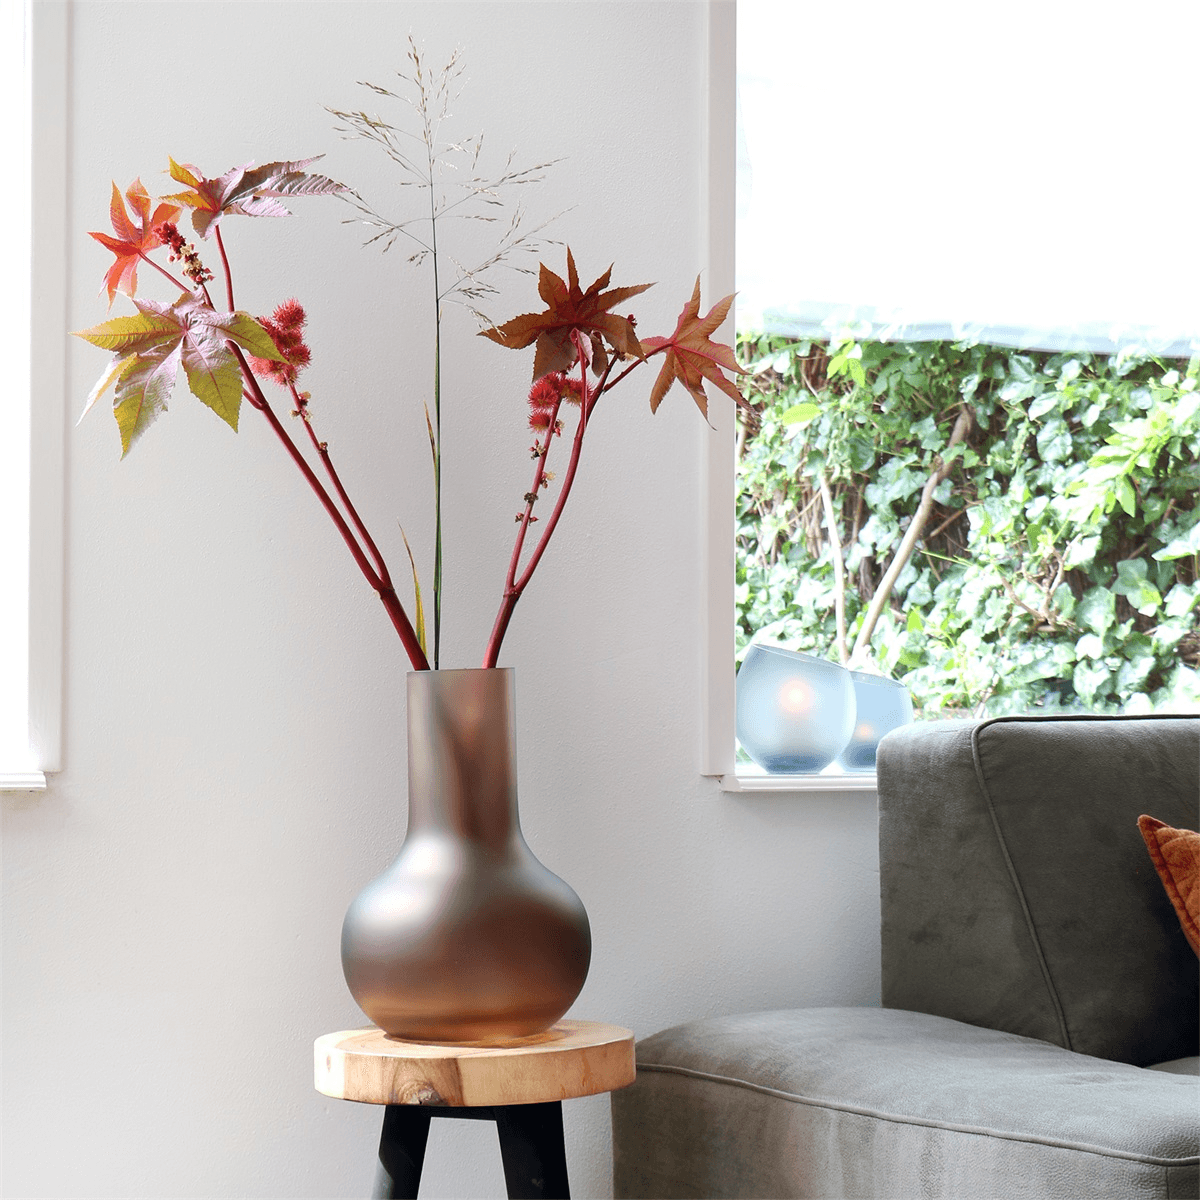 Designer Taupe Seim Satin Deko Vase Blumenvase Handarbeit 37cm - HomeDesign Knaus wir schaffen Inspirationen 